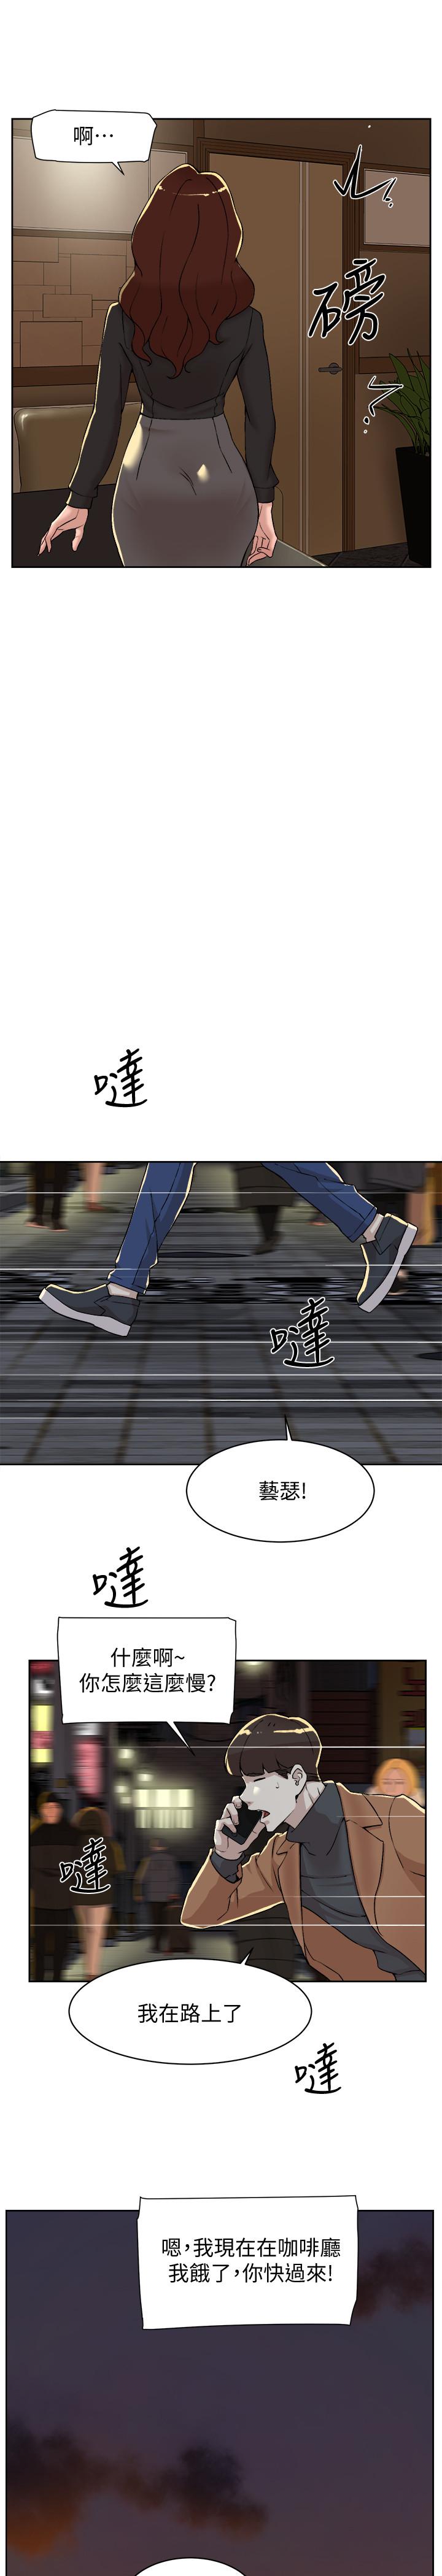 韩国污漫画 她的高跟鞋(無刪減) 第118话-选一个你喜欢的吧 21